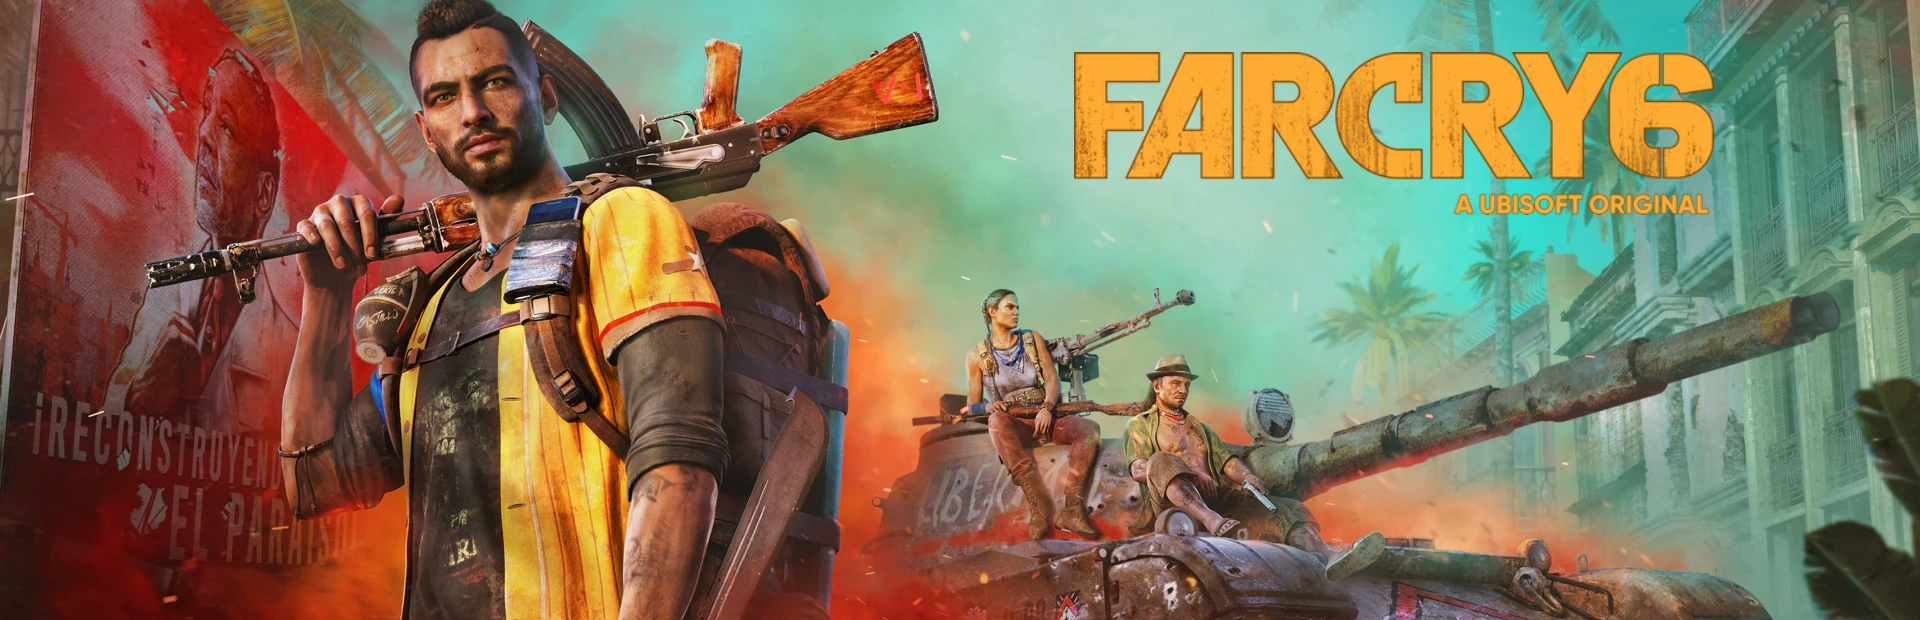 دانلود بازی Far Cry 6 برای کامپیوتر | گیمباتو